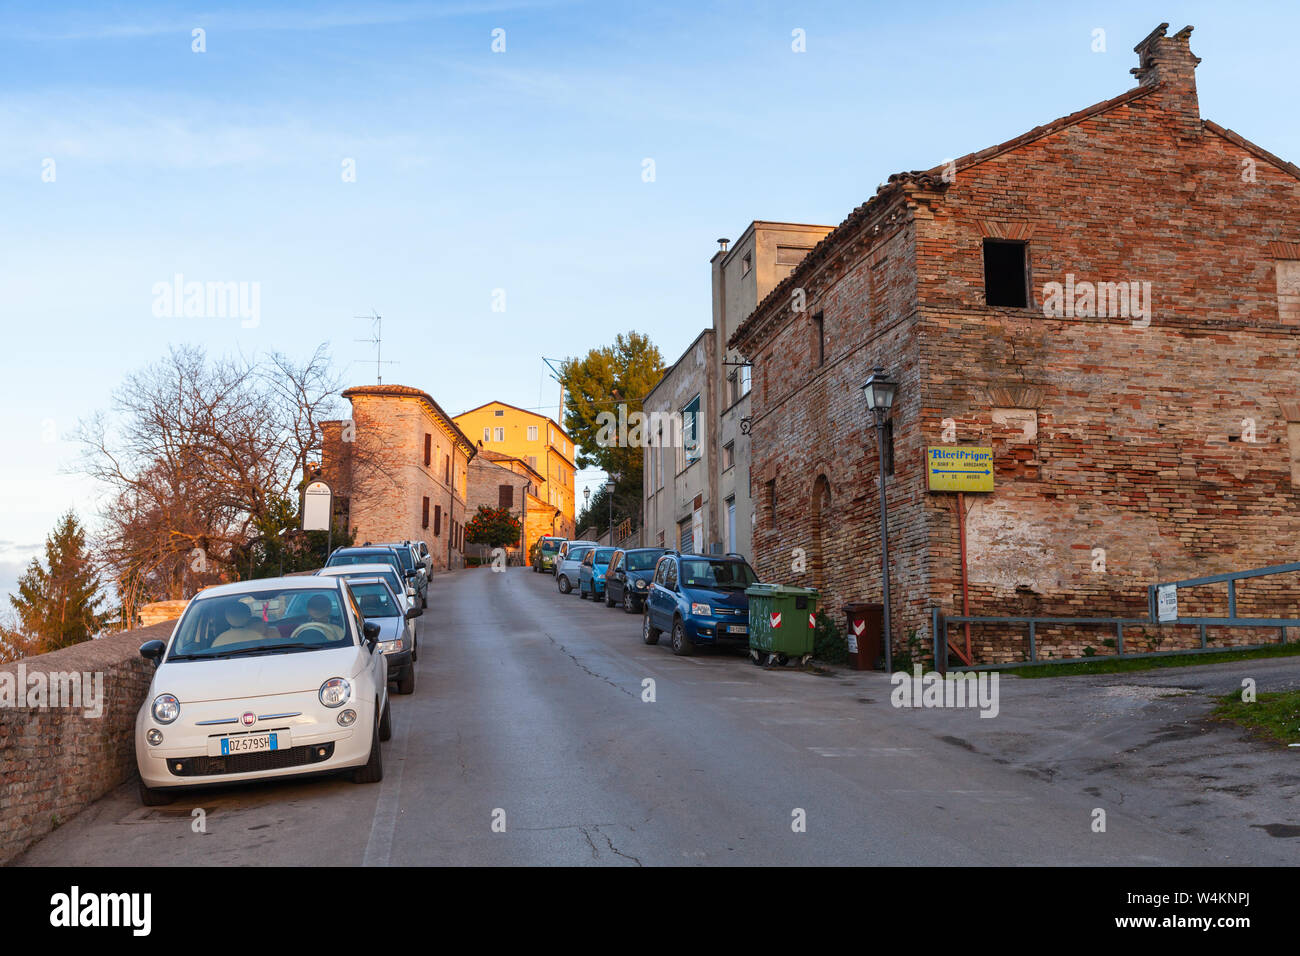 Fermo, Italia - 8 Febbraio 2016: Street view con vecchie case di Fermo, città italiana Foto Stock